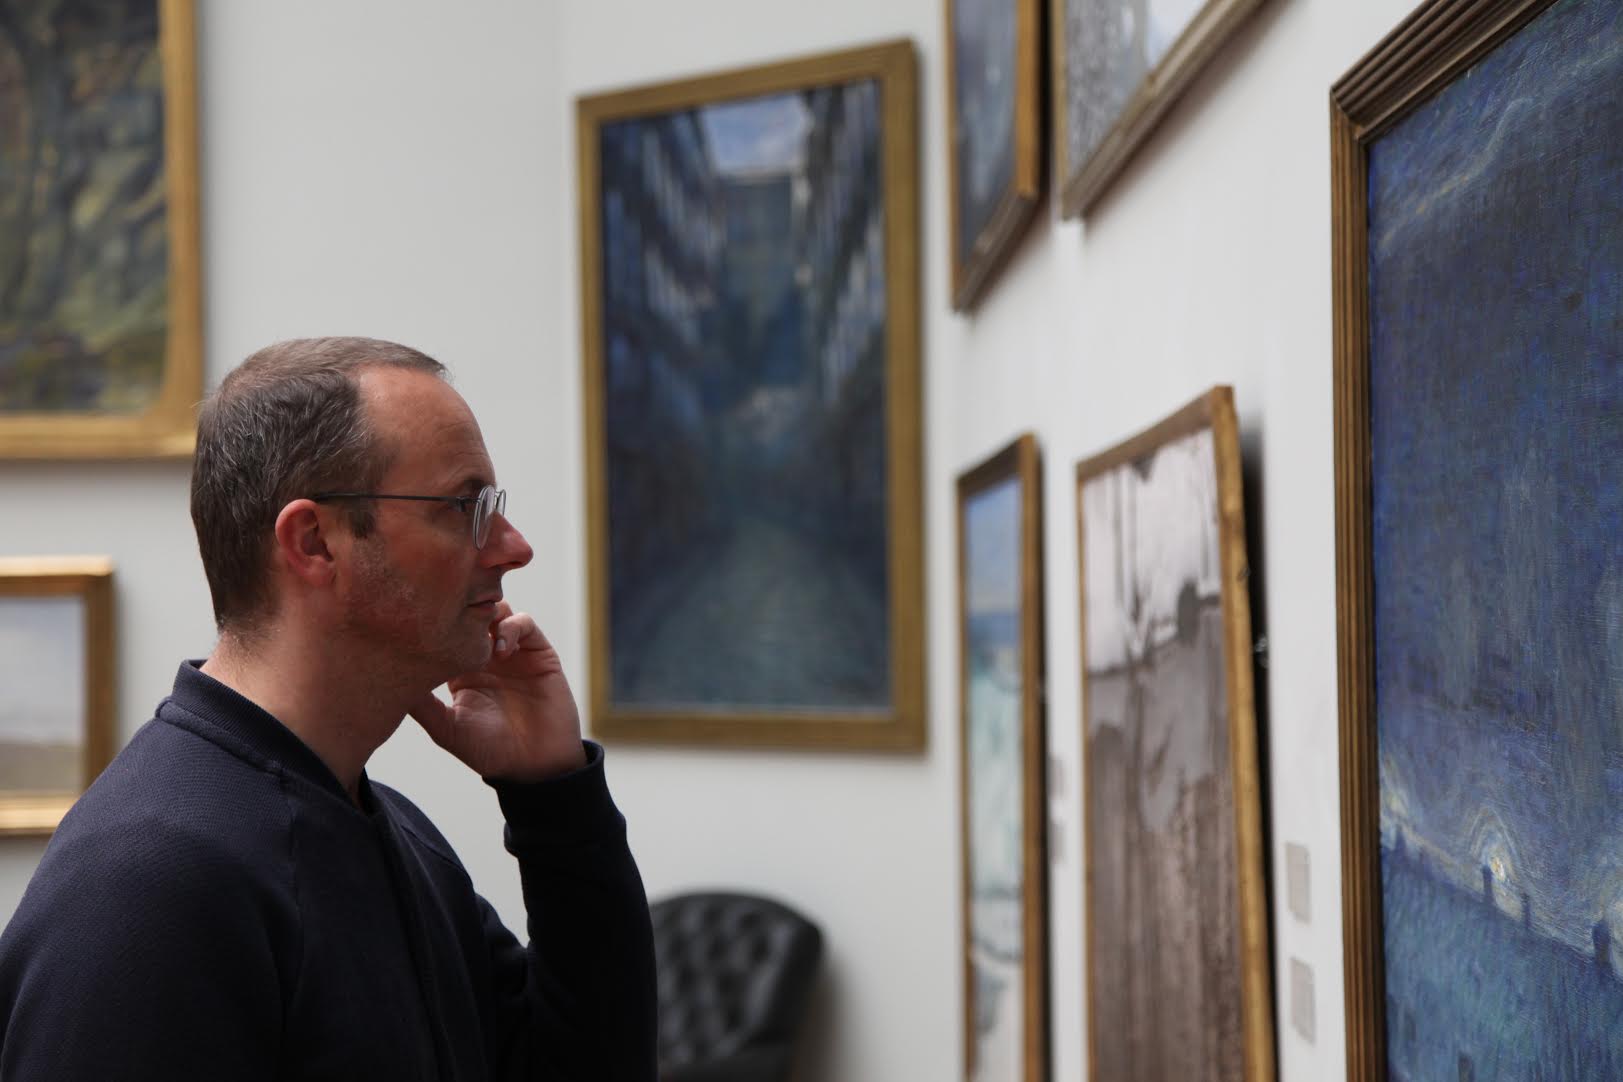 Konstnären Benny Nemerofsky Ramsay ger besökaren på Thielska nya upplevelser med sitt verk Interludes.